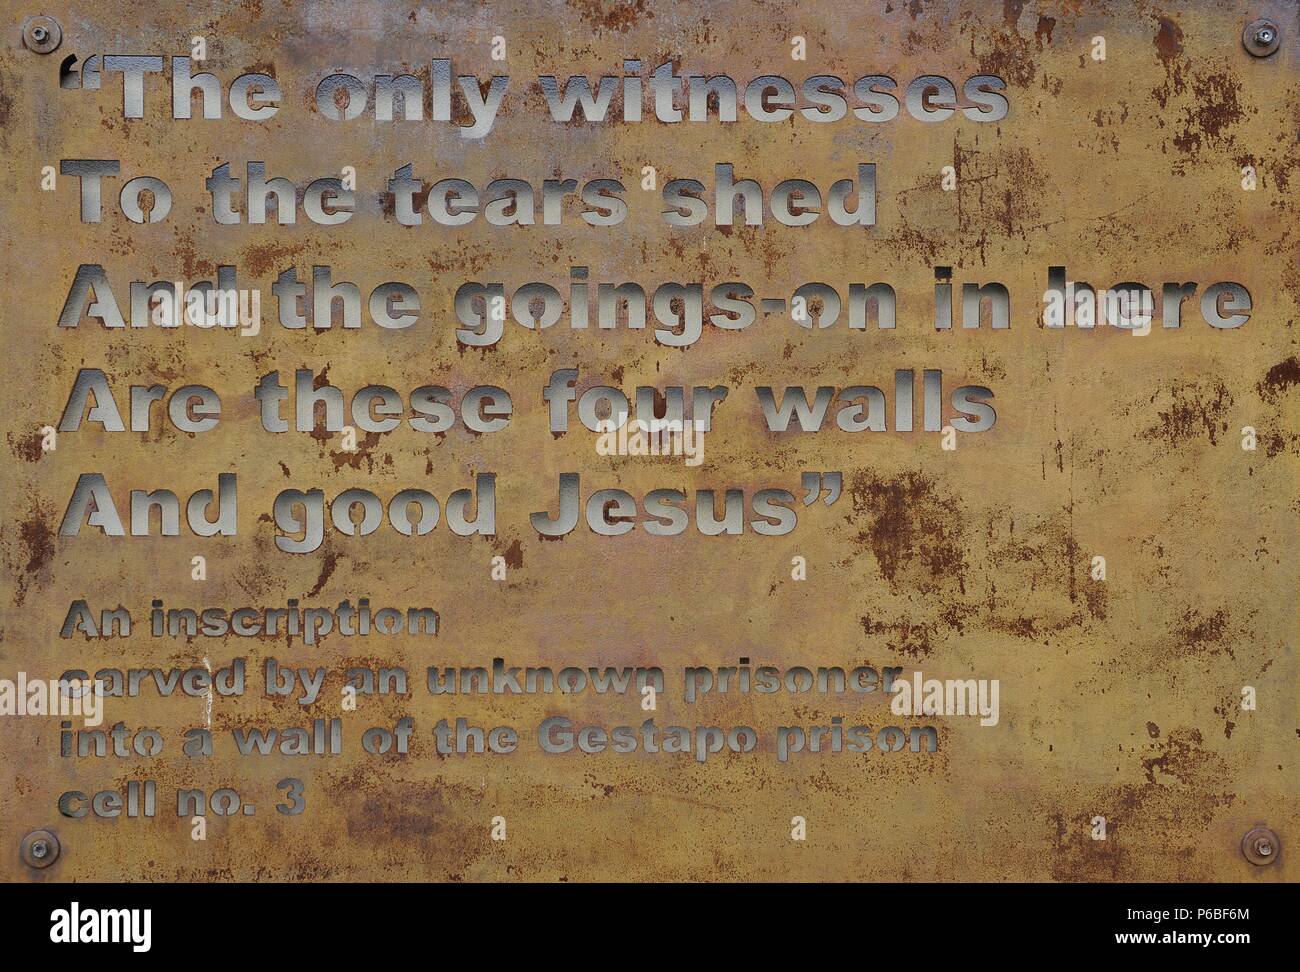 Polen. Krakau. Gestapo Museum. Beschriftung von einem unbekannten Gefangenen in eine Wand gehauen. Zelle n¼. 3. "Die einzigen Zeugen, die Tränen und das Treiben in Hier sind diese für Wände und guter Jesus'. Stockfoto